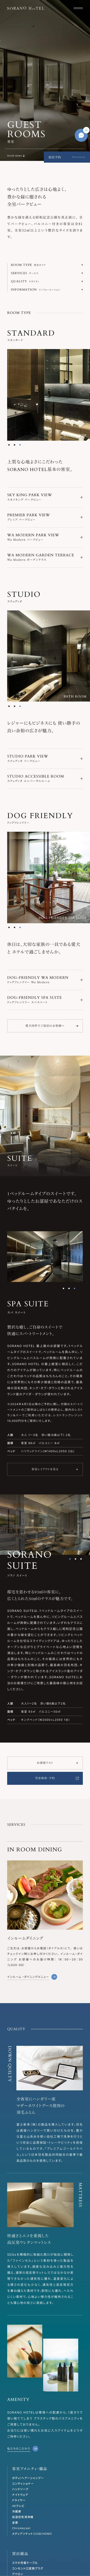 【公式】SORANO HOTEL | 東京 立川のウェルビーイングホテルのモバイルサイズのサービス紹介画像